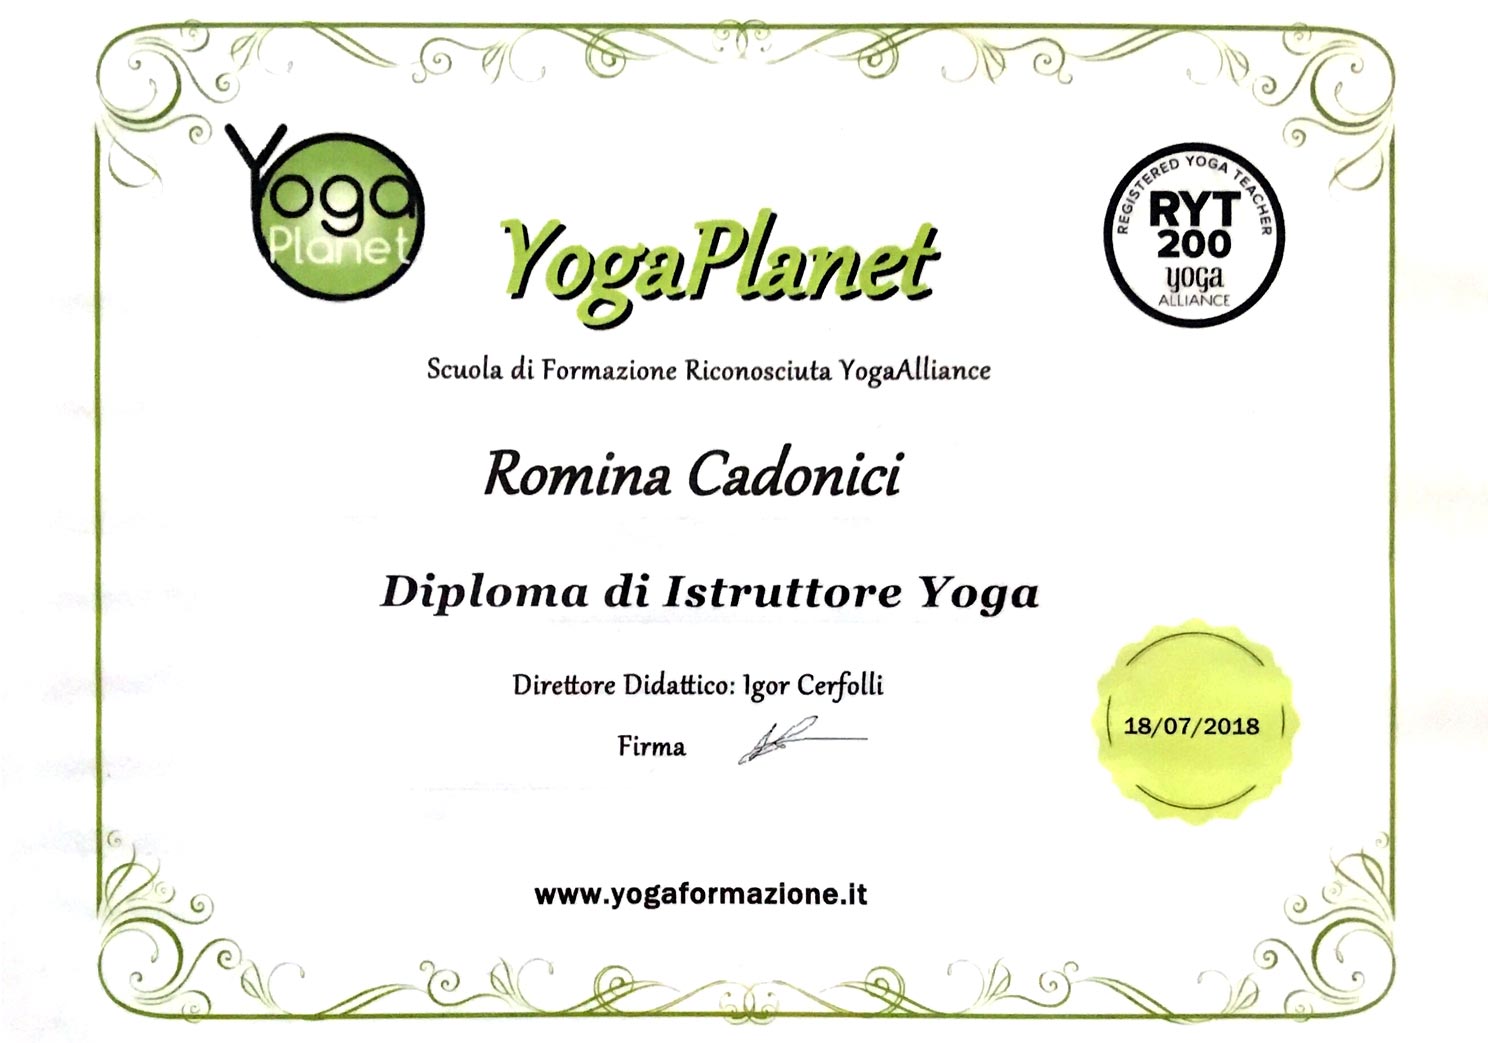 Formazione Yoga Romina Cadonici Yoga Planet Bologna